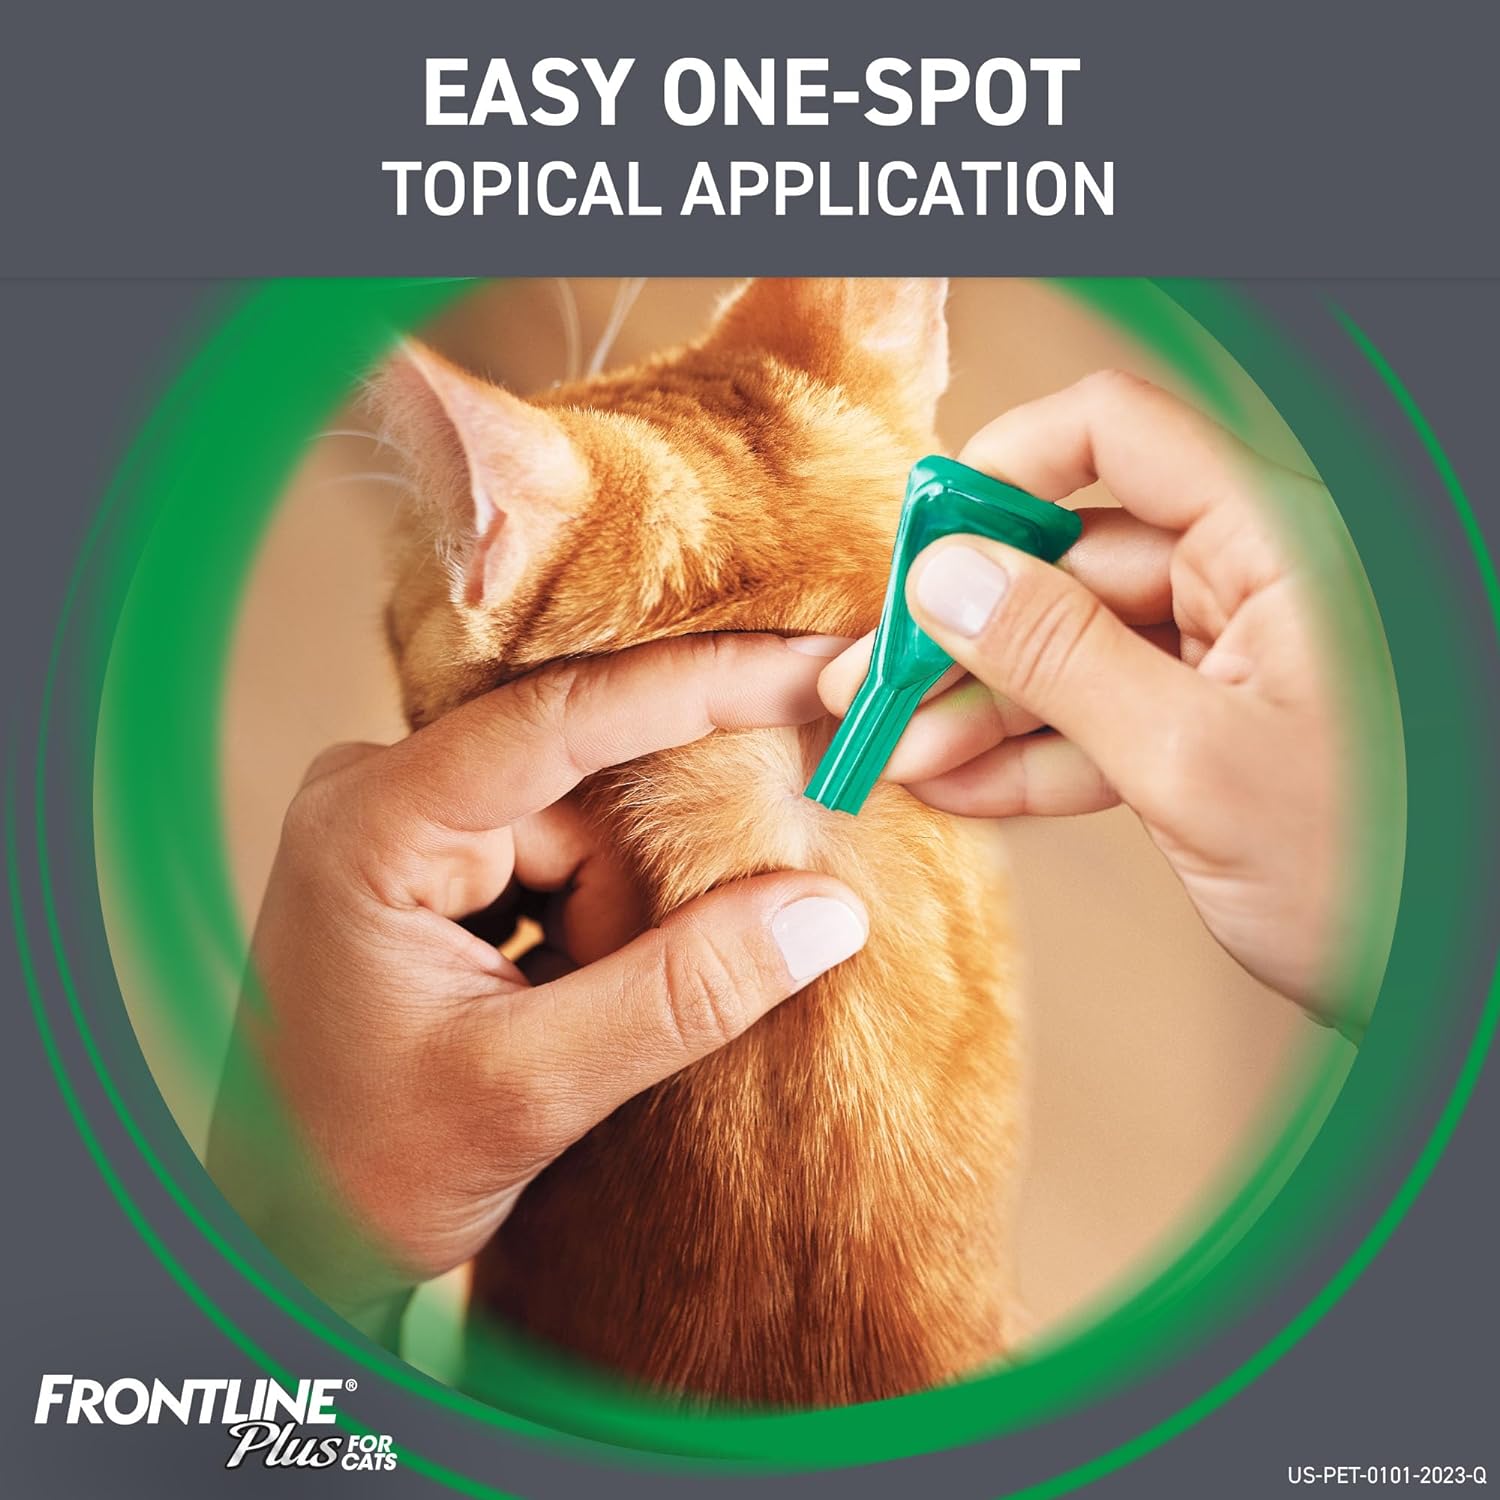 Frontline Plus para gatos y gatitos (1.5 libras y más) Tratamiento de pulgas y